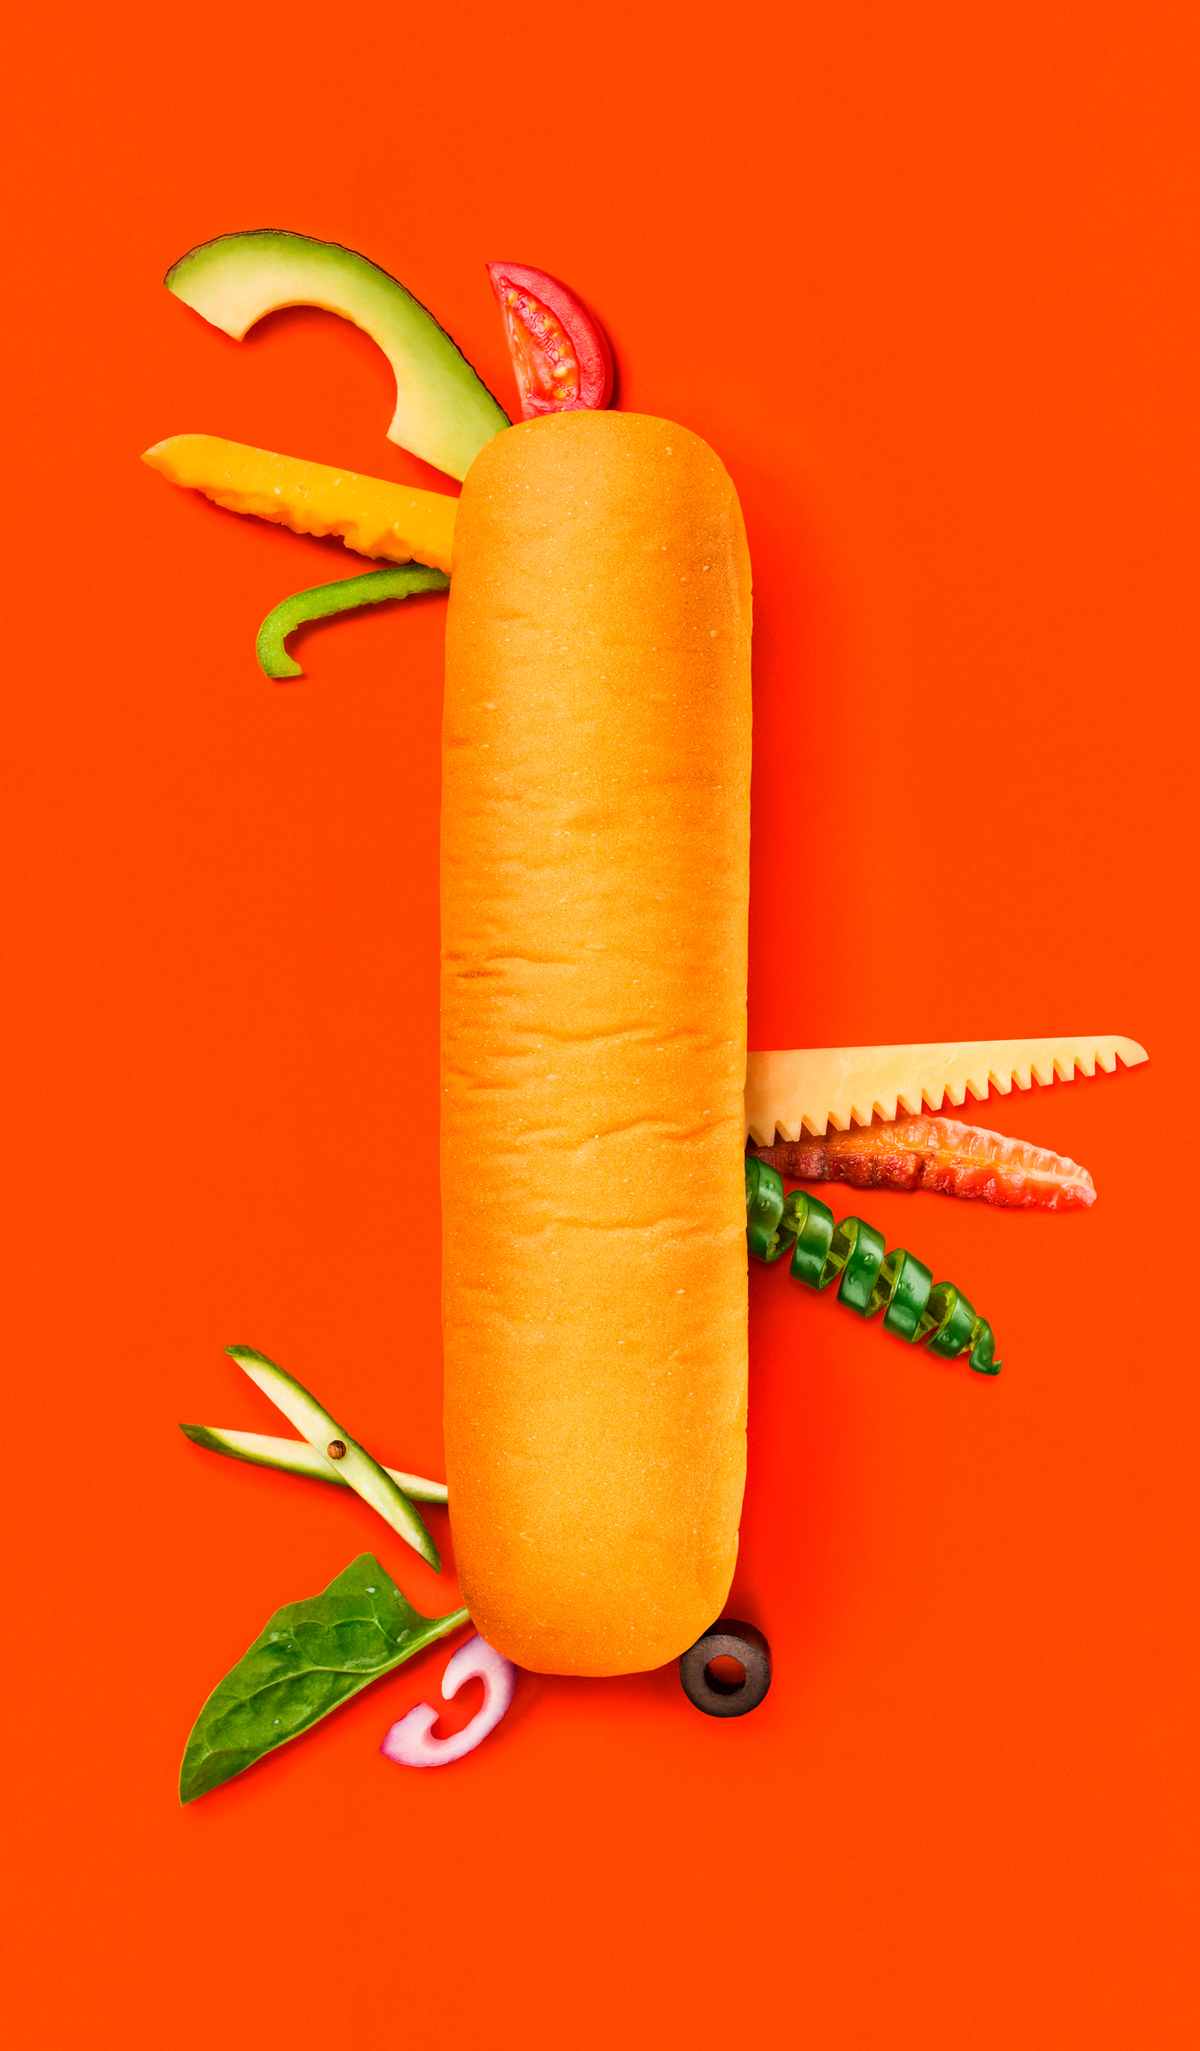 Des mises en scène étonnantes réalisées avec des légumes pour Subway